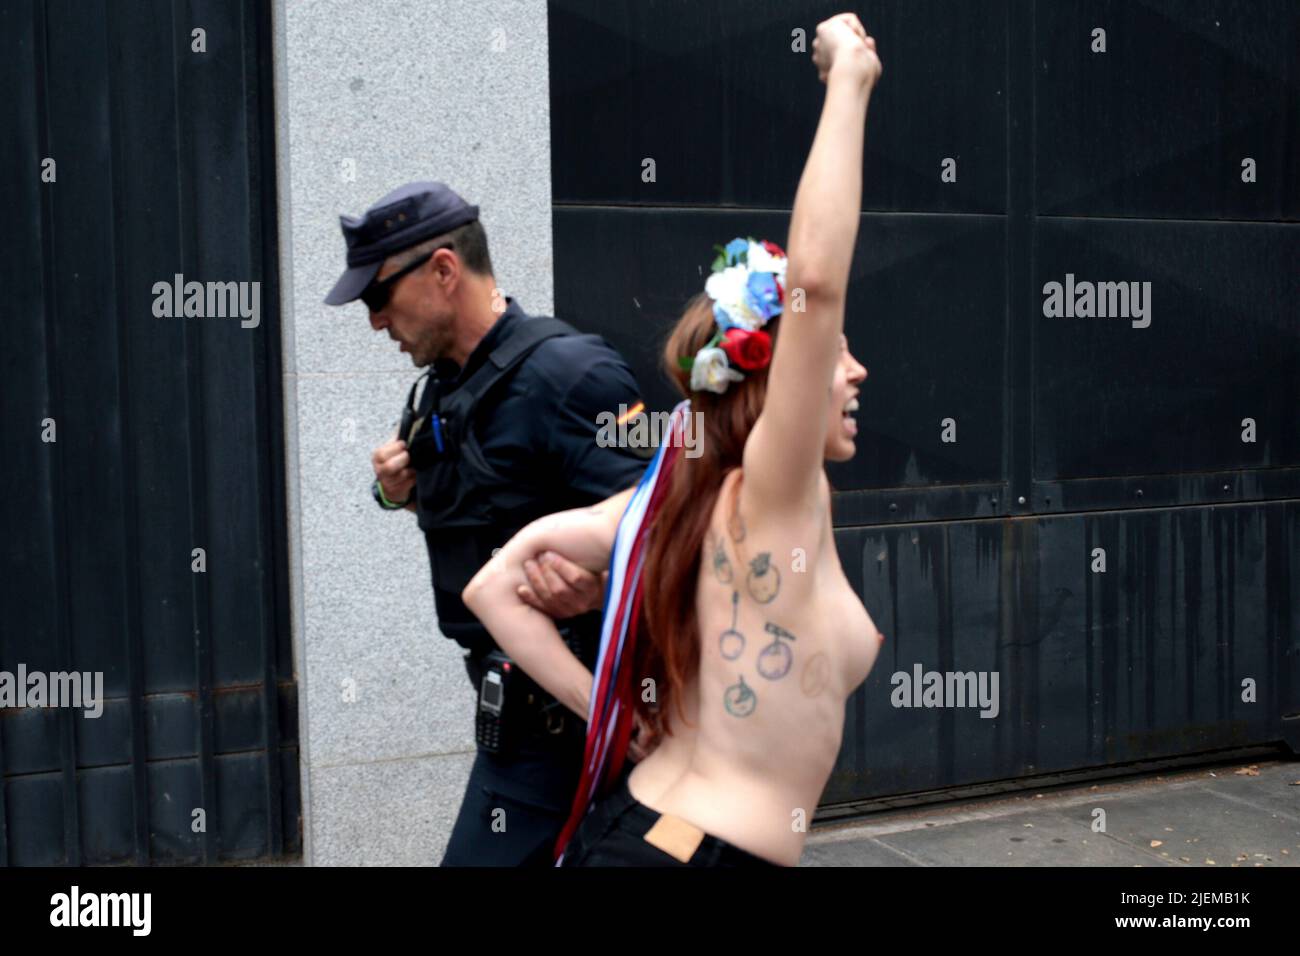 Madrid, SPAI; 27.06.2022.- des militants de Femen España protestent devant l'ambassade des États-Unis d'Amérique à Madrid en faveur de l'avortement et contre la décision prise par la Cour suprême avec les voix de juges conservateurs qu'il n'y a pas de droit constitutionnel à l'avortement, l'autoriser ou non. fin des états de grossesse. Photo: Juan Carlos Rojas Banque D'Images